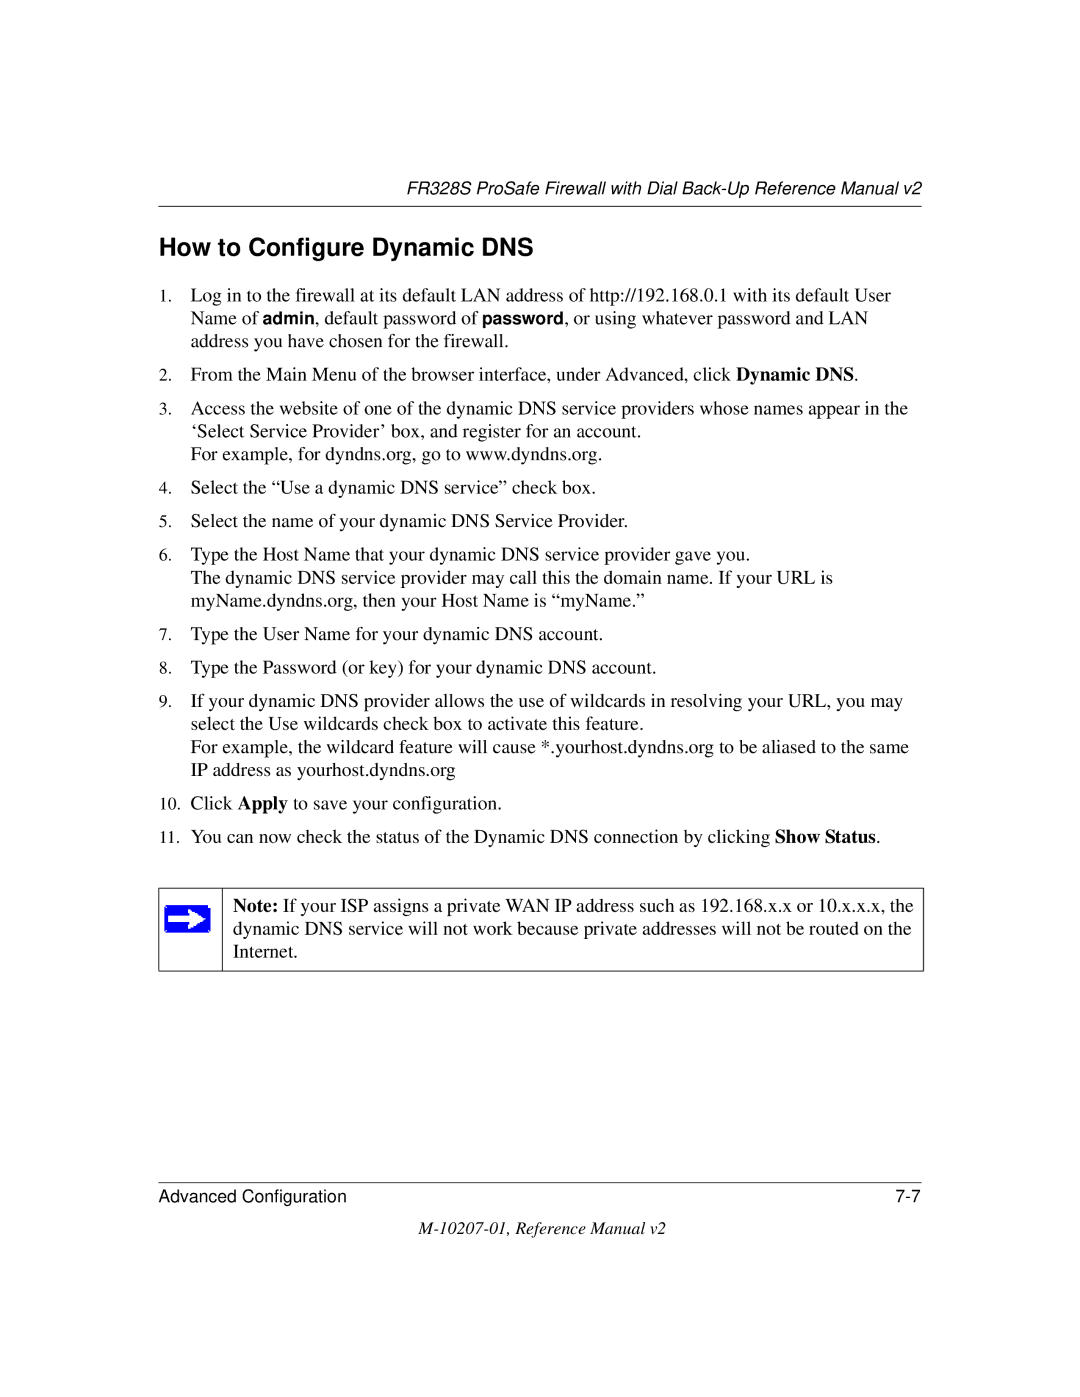 NETGEAR FR328S manual How to Configure Dynamic DNS 